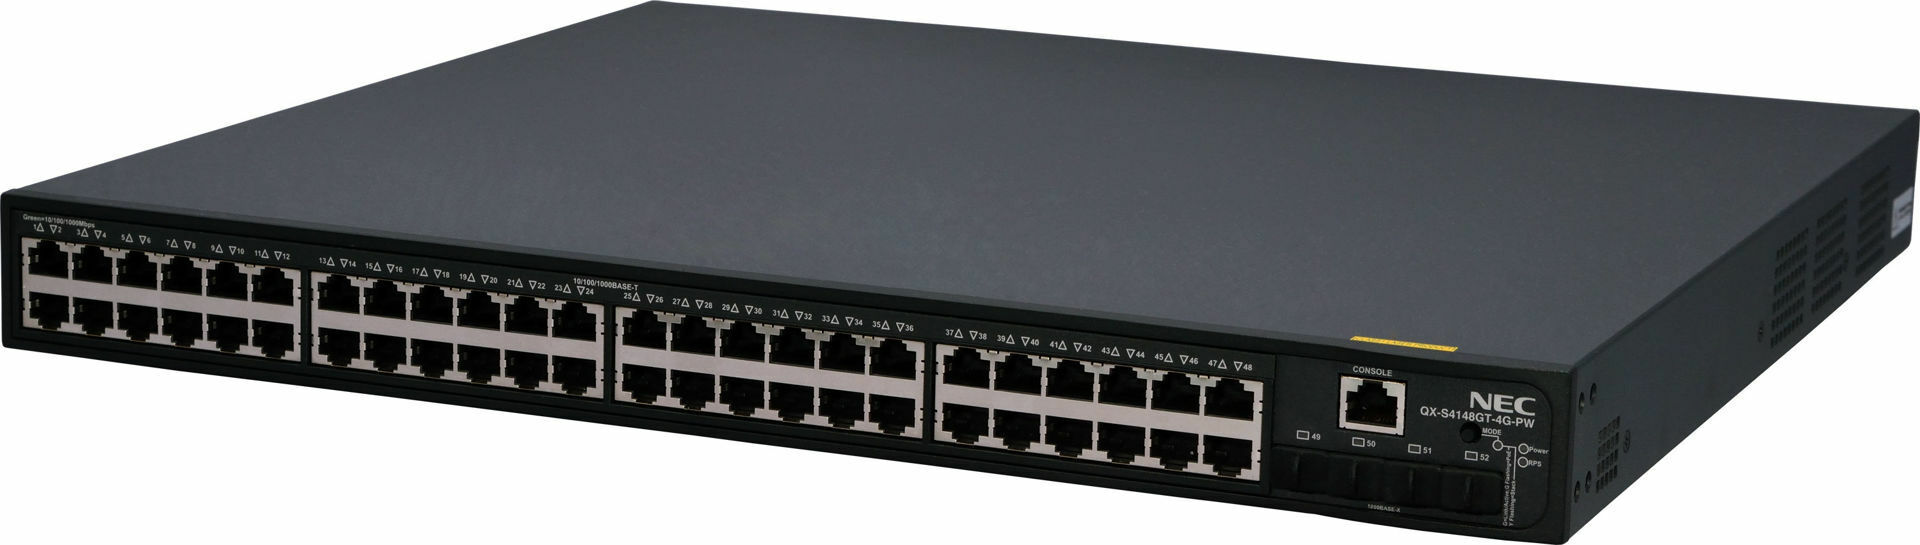 سوییچ شبکه نک مدل NEC S4148GT-4G-PW| سوئیچ شبکه نک مدل NEC S4148GT-4G